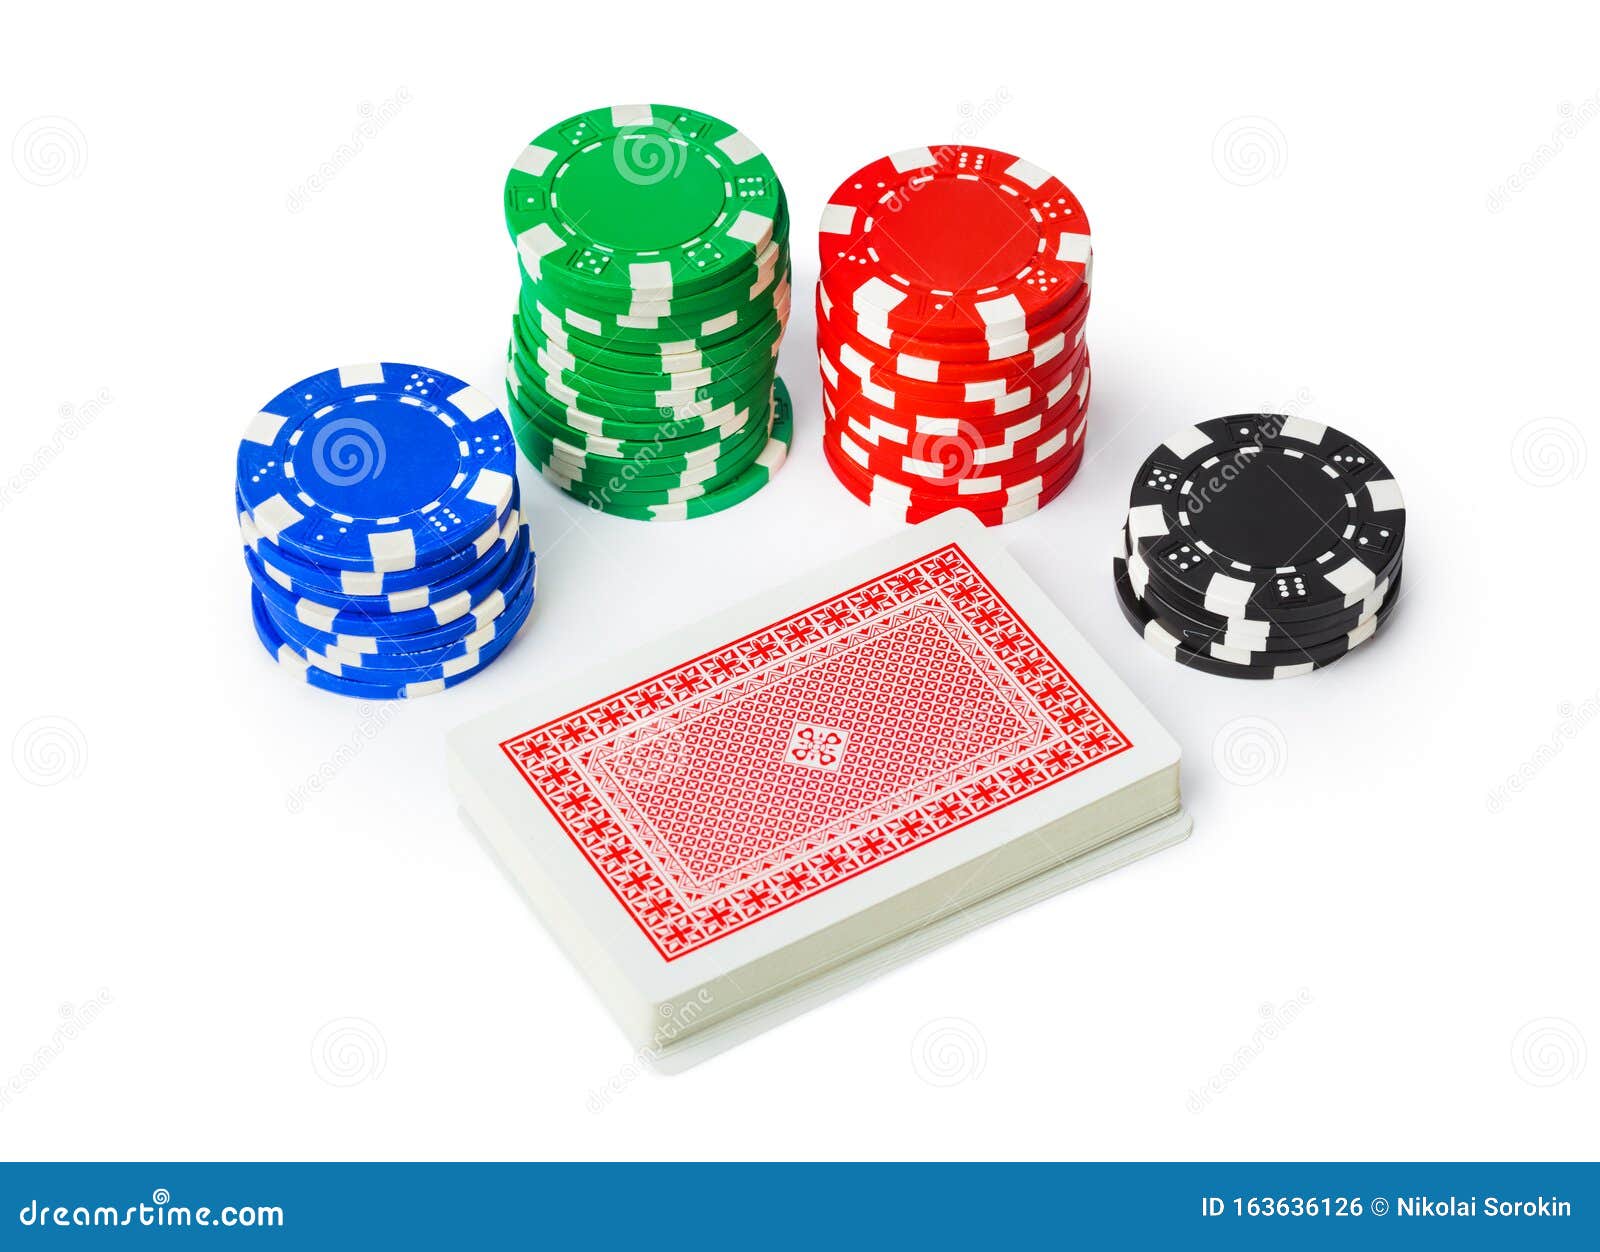 Играть в казино на фишки форум стратегии ставок на спорт с проходимостью больше 70